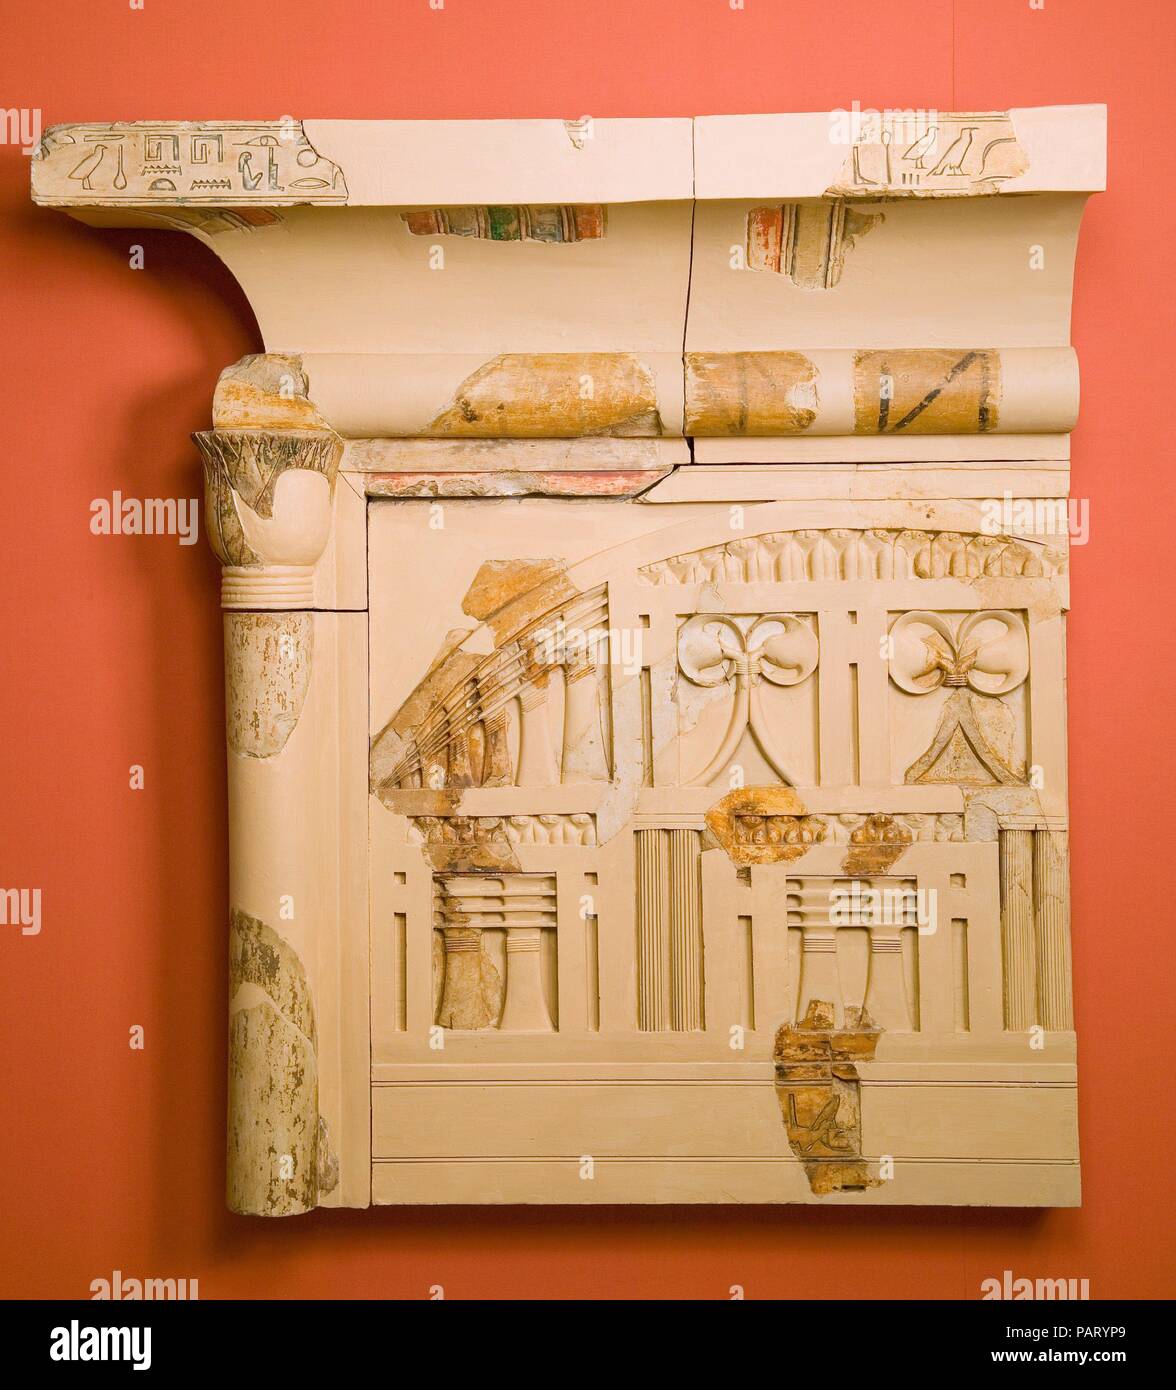 Teil des Heiligtums der Königin Henhenet. Abmessungen: H.120 cm (47 1/4 in.); W. 114 cm (44 7/8 in.); d 34 cm (13 3/8 in.). Dynastie: Dynasty 11. Herrschaft: frühe Herrschaft von Mentuhotep II. Datum: Ca. 2051-2030 v. Chr.. Der totentempel Komplex des Königs Mentuhotep II. in Deir el-Bahri ist eines der wichtigsten Denkmäler in der Thebanischen Bereich. Zwischen um 2050-2000 v. Chr. erbaut, vor dem berühmten Tempel der Hatschepsut direkt nach Norden, es liegt in einem abgelegenen Wüstental innerhalb einer Bucht von spektakulären Kalkfelsen. Das Denkmal serviert vielfältige Funktionen: Es war eine leichenhalle Komplex für den König und Frau Stockfoto